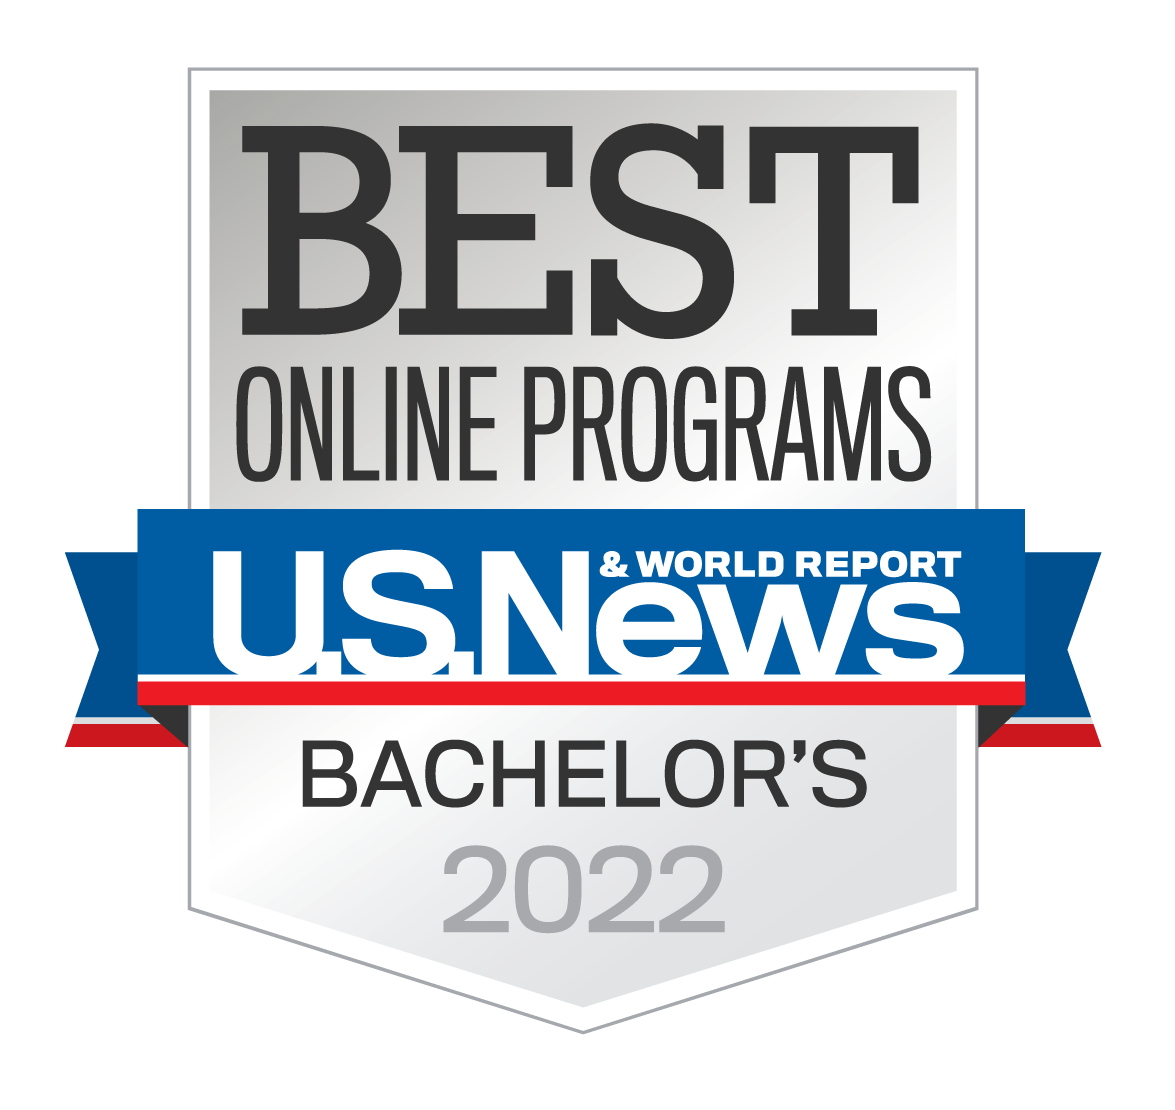 U.S. News & World Report Best Online Programs 2021